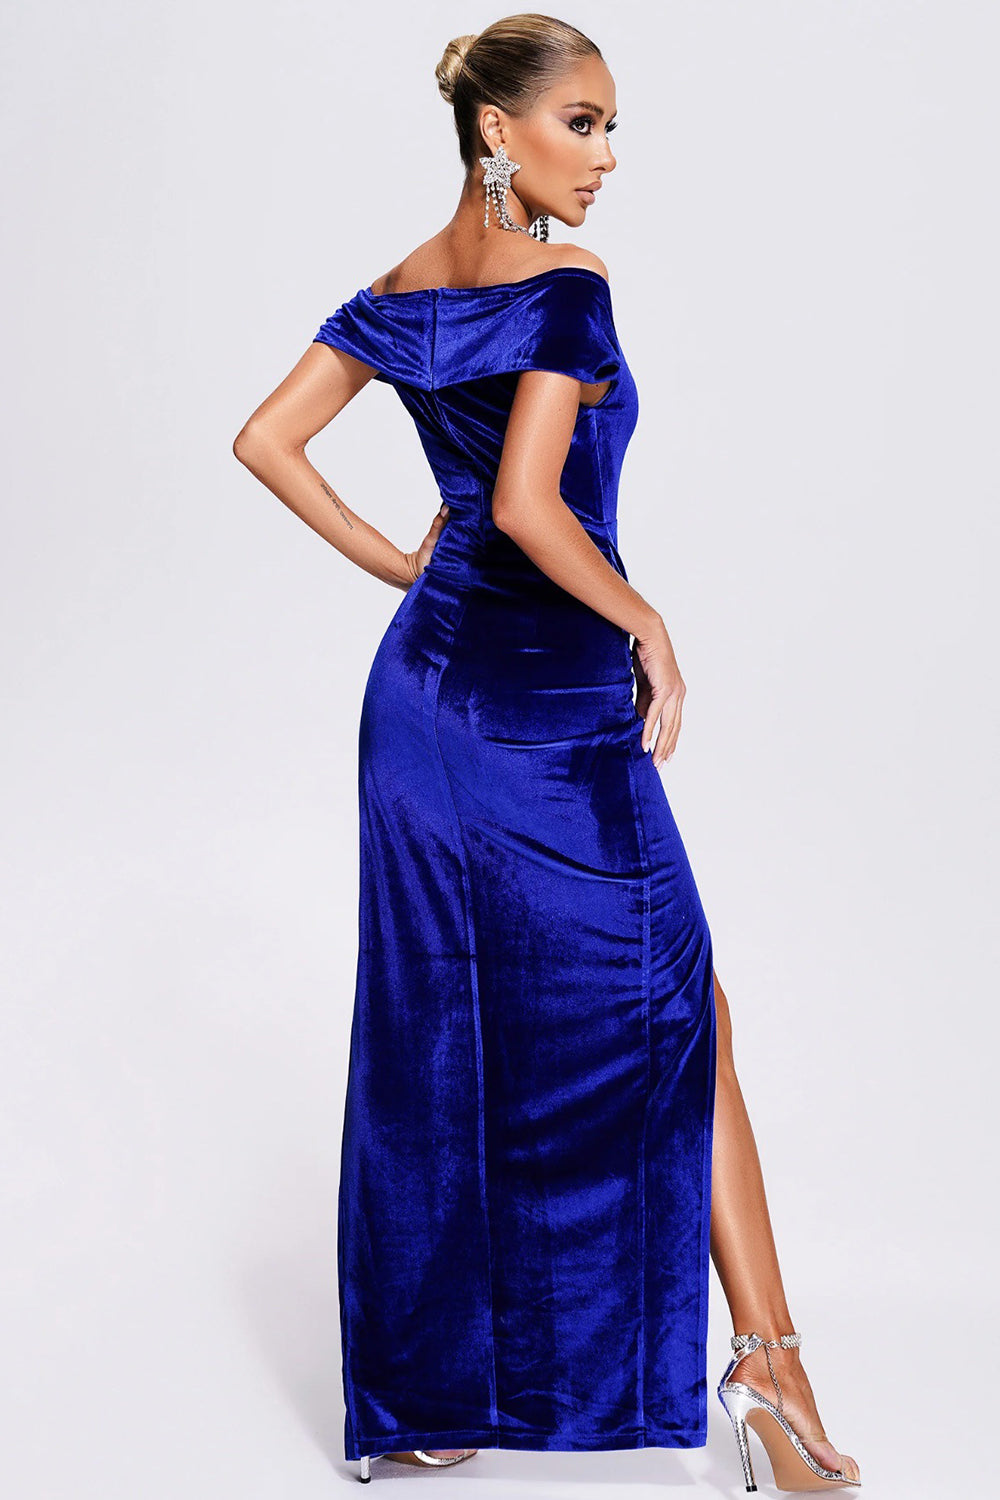 Off the Shoulder Royal Blue Velvet Holiday Party Dress with Slit